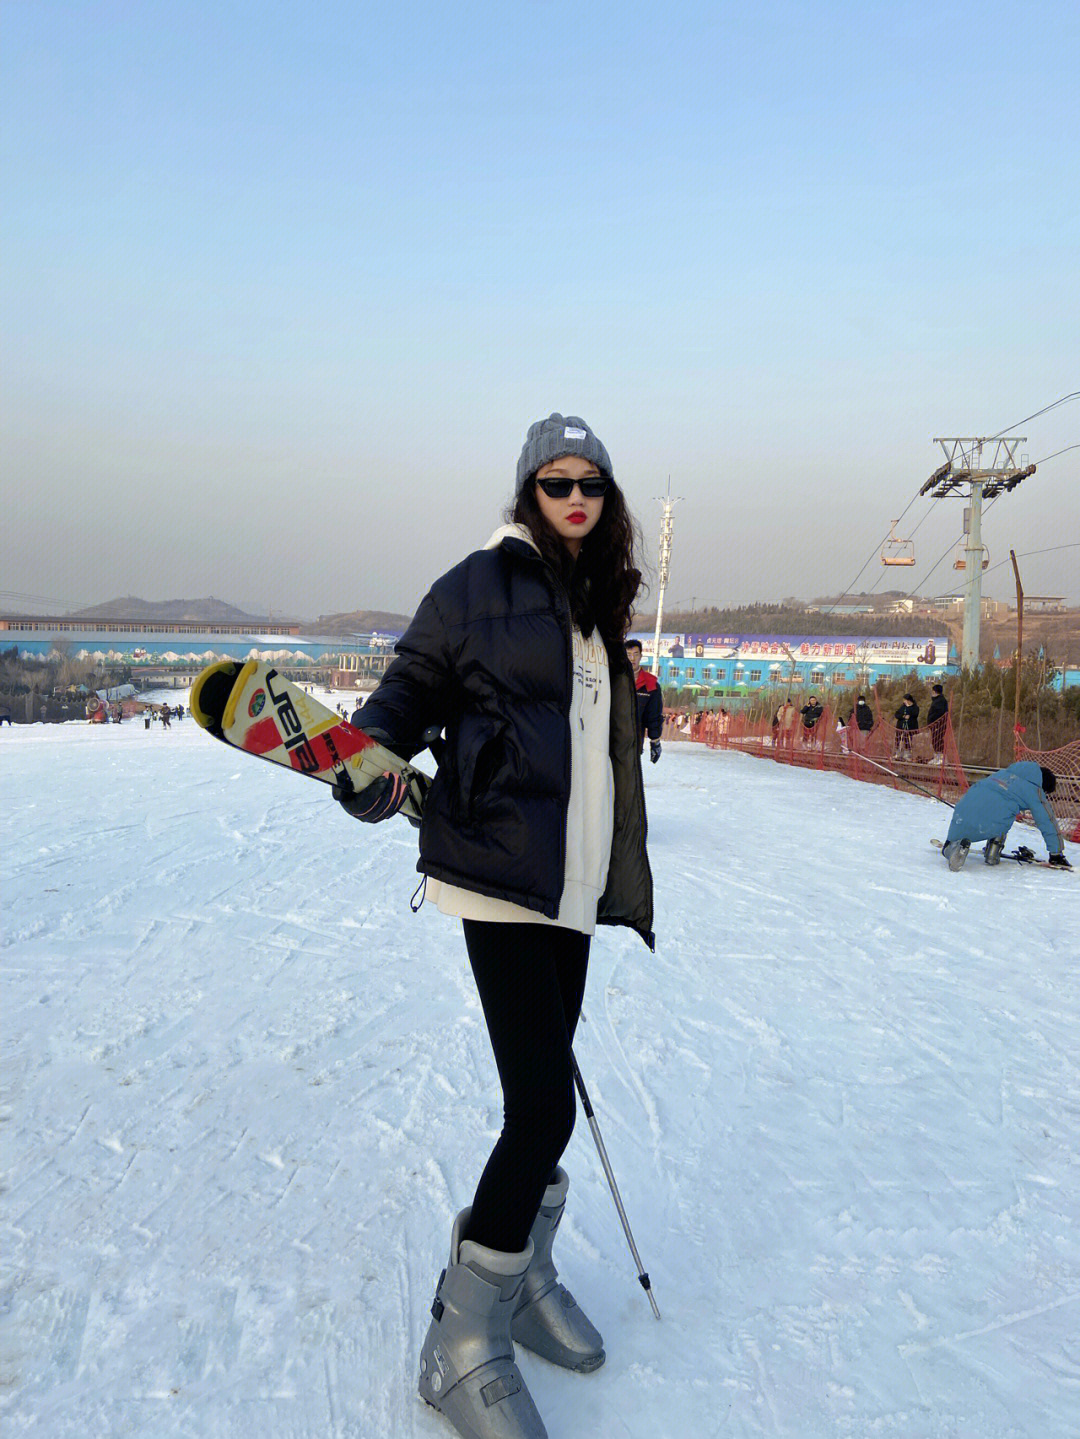 邯郸永年佛山滑雪场图片